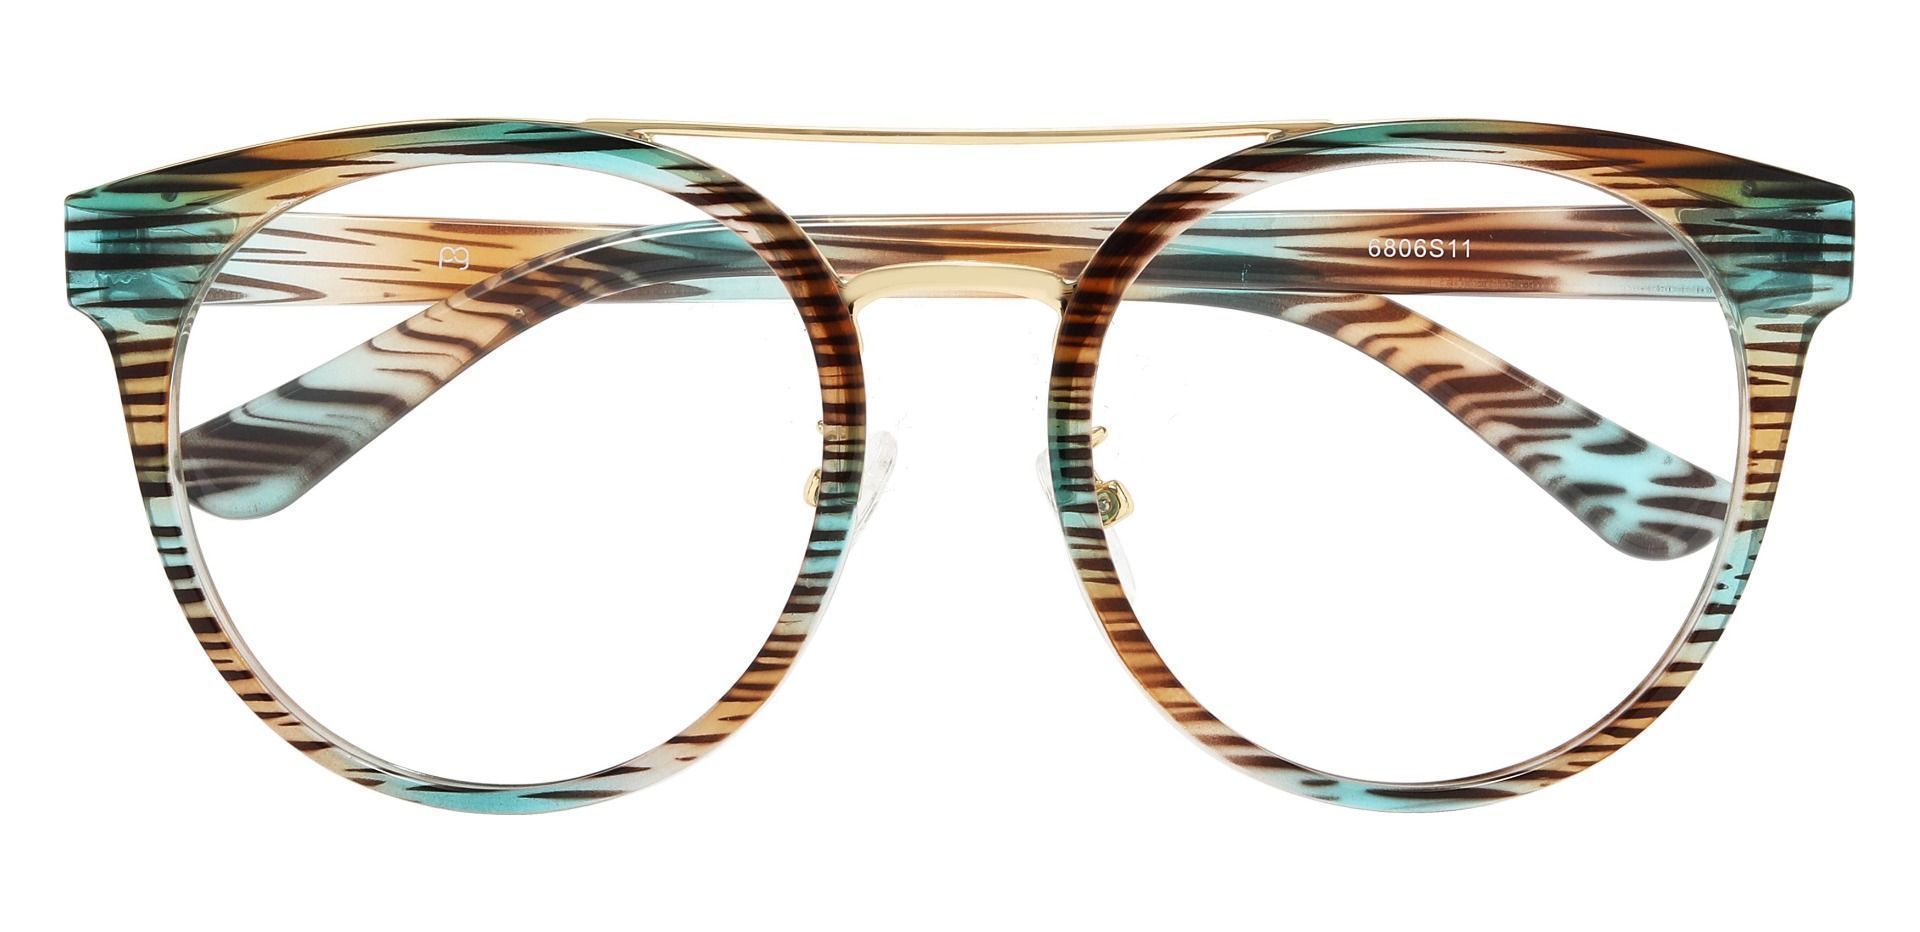 Oasis Aviator Prescription Glasses - Striped